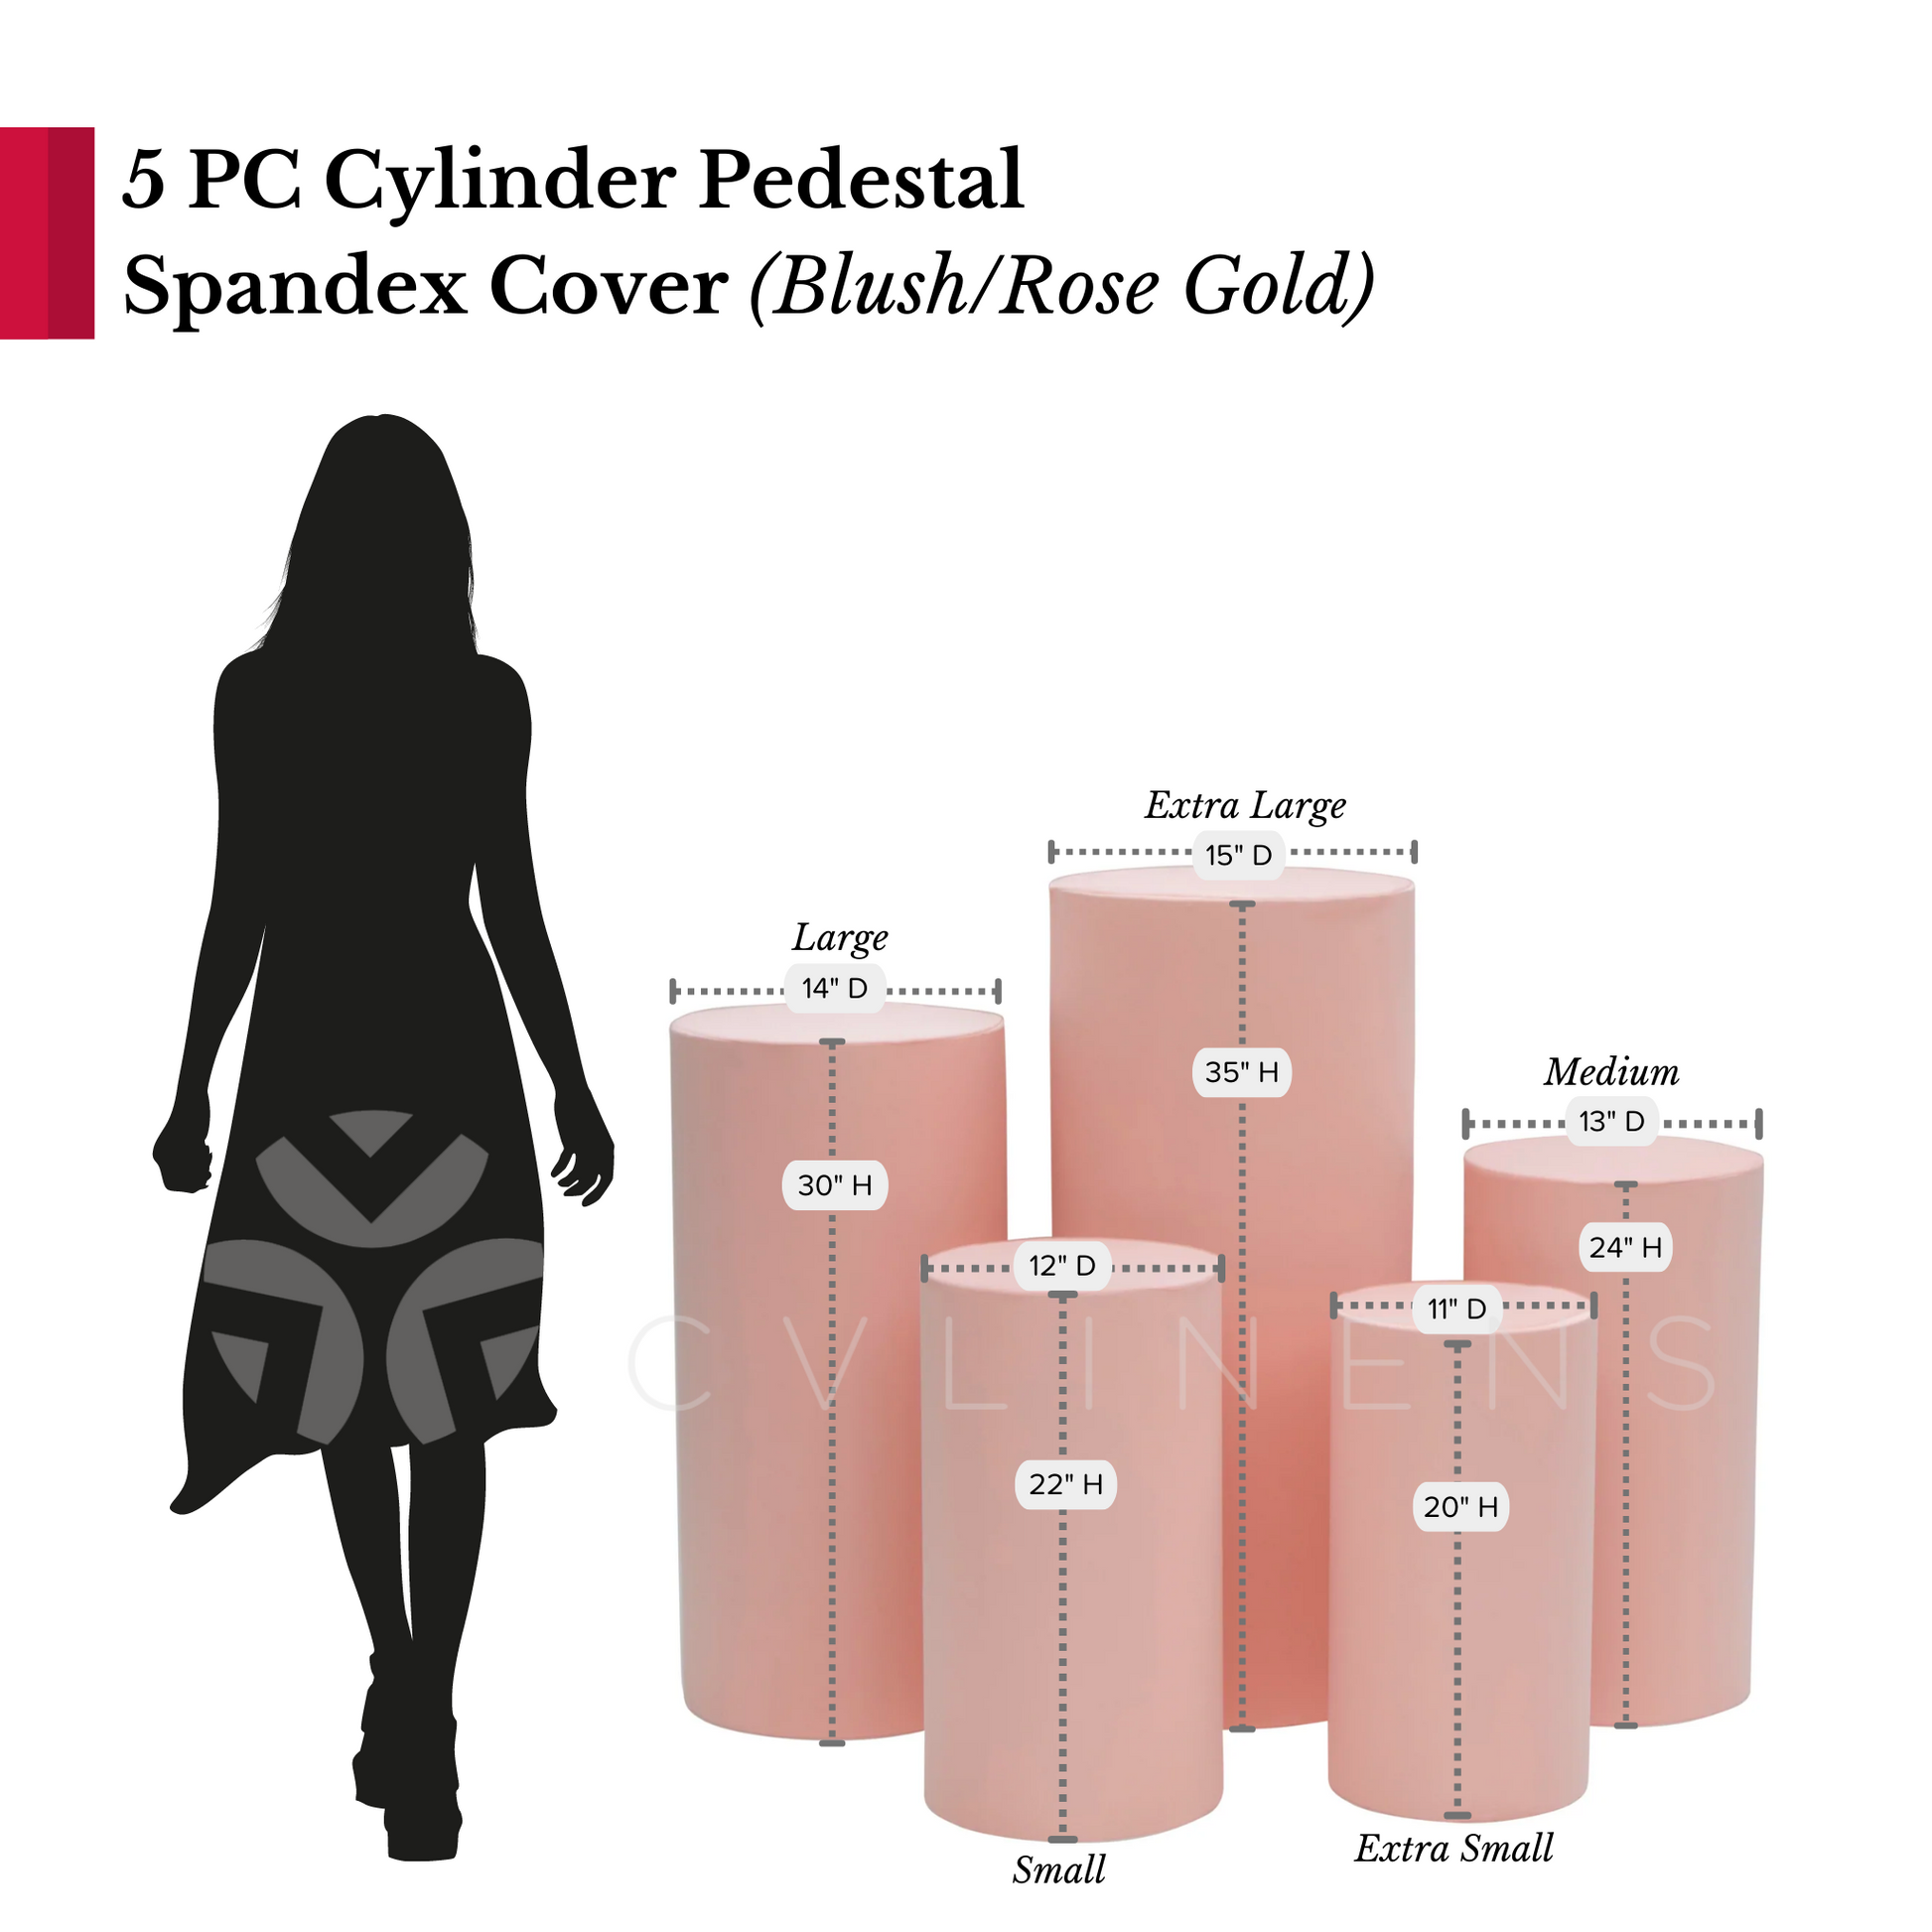 Spandex Pillar Covers for Metal Cylinder Pedestal Stands 5 pcs/set - Blush/Rose Gold